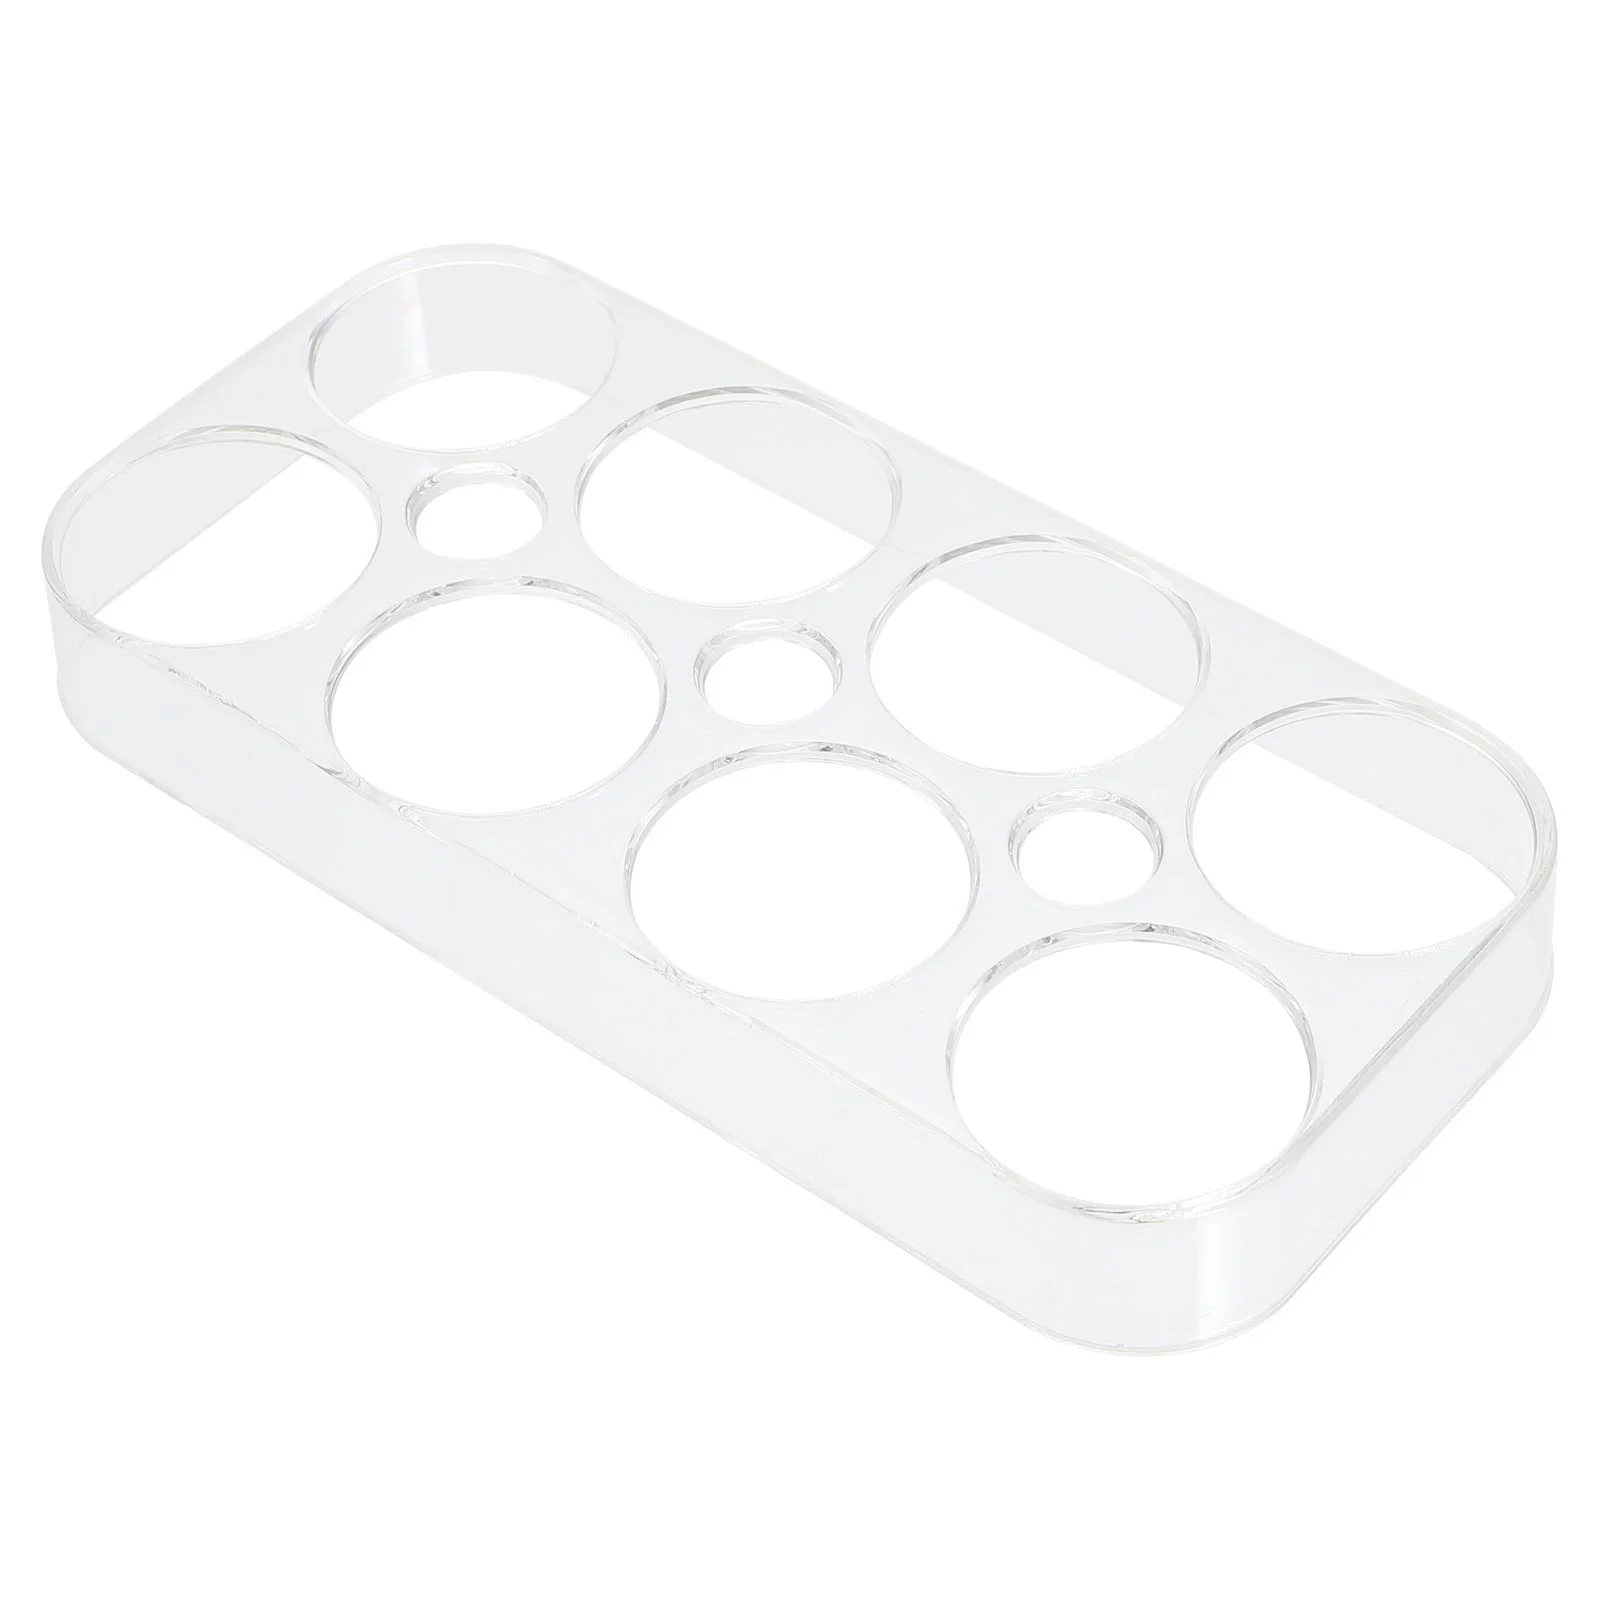 

Полка для яиц, подставка для яиц, стеллаж для яиц, коробка для хранения яиц в холодильнике, коробка для хранения яиц в холодильнике, ящики для...